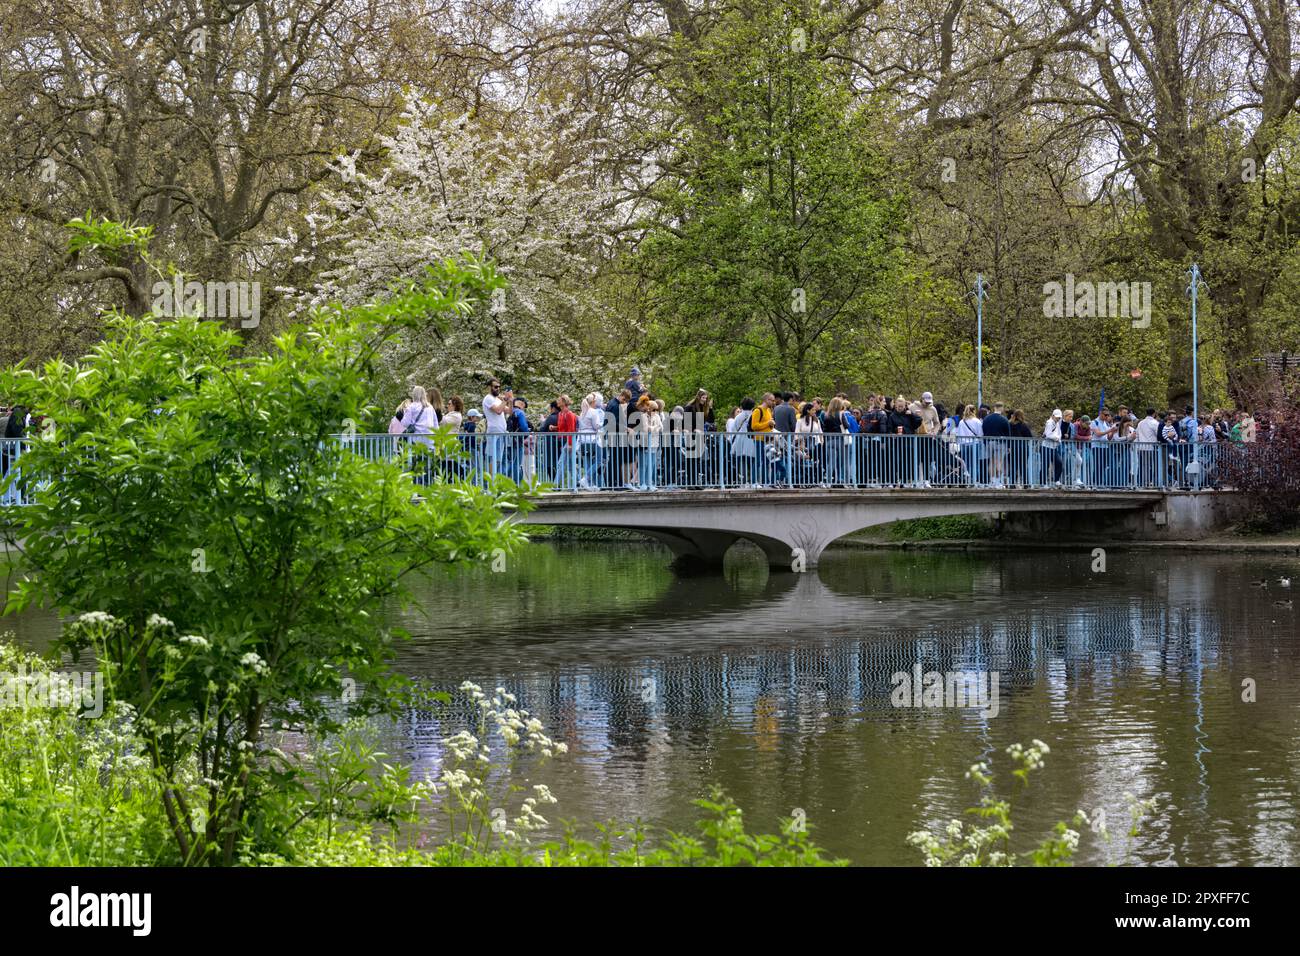 Les personnes se trouvant sur le pont à St. James's Park, Londres, Royaume-Uni une semaine avant le couronnement du roi Charles III Banque D'Images